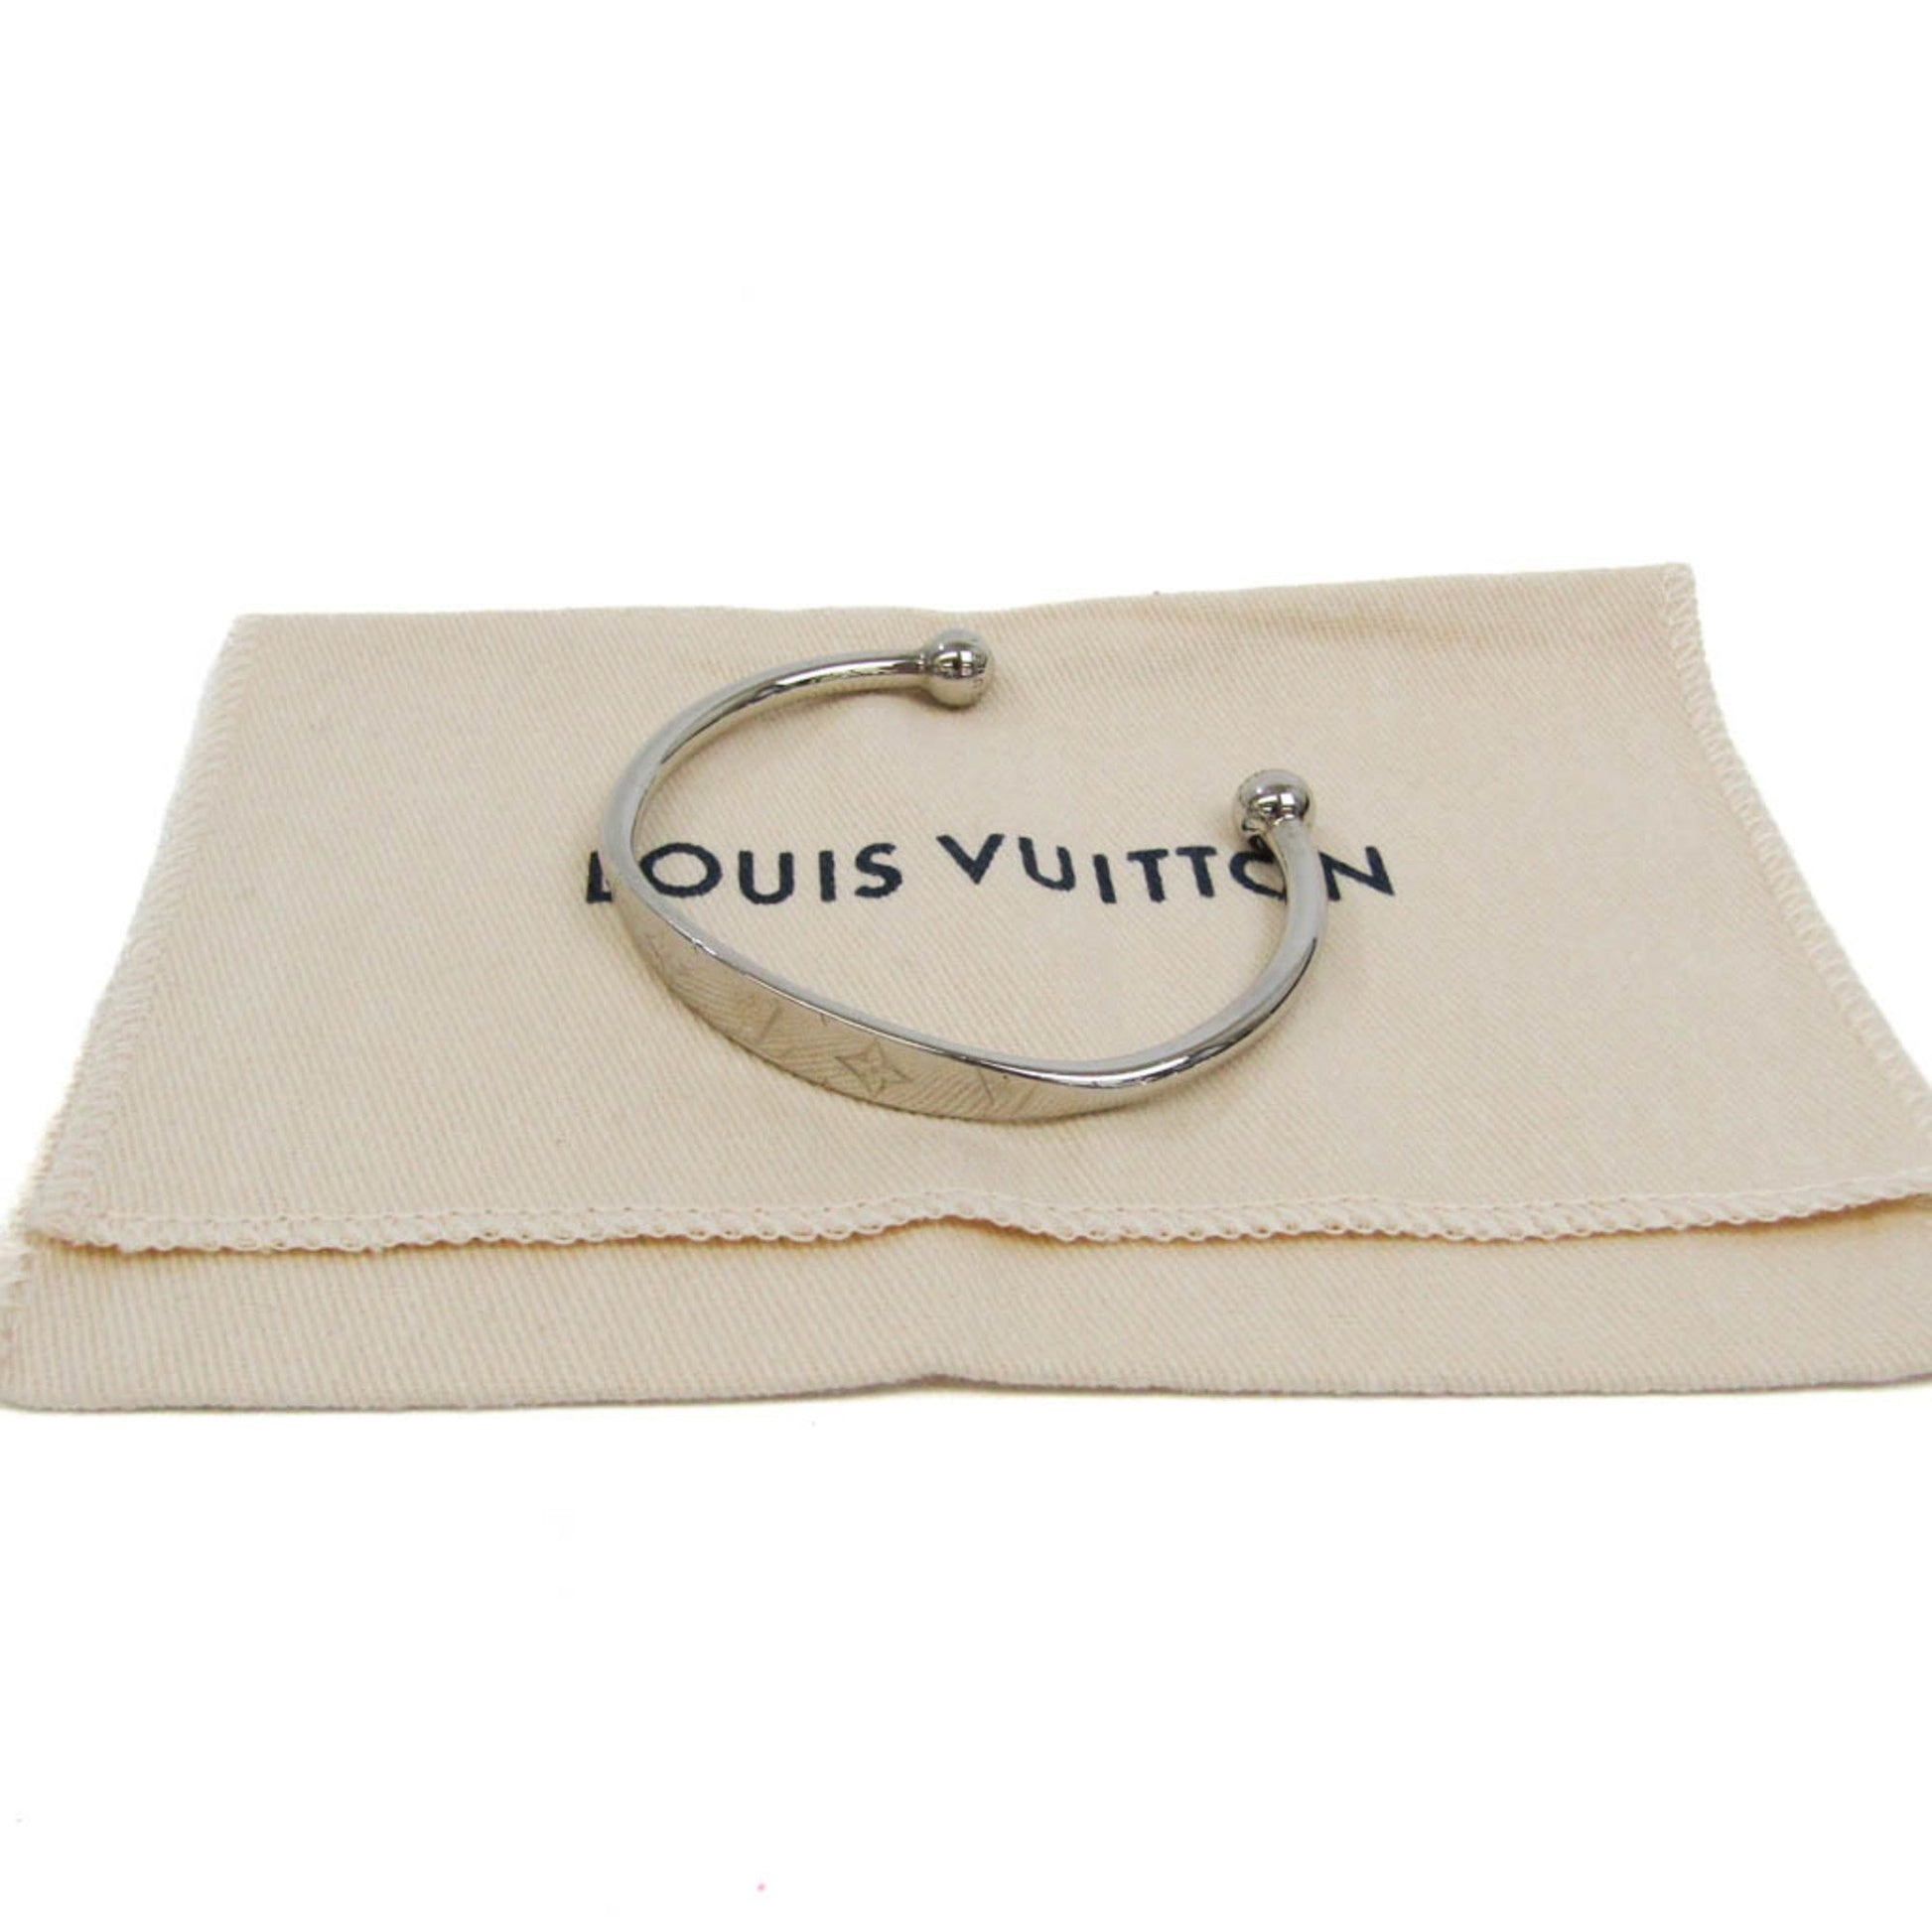 Louis Vuitton bracelet M64840 women's bangle monogram pattern